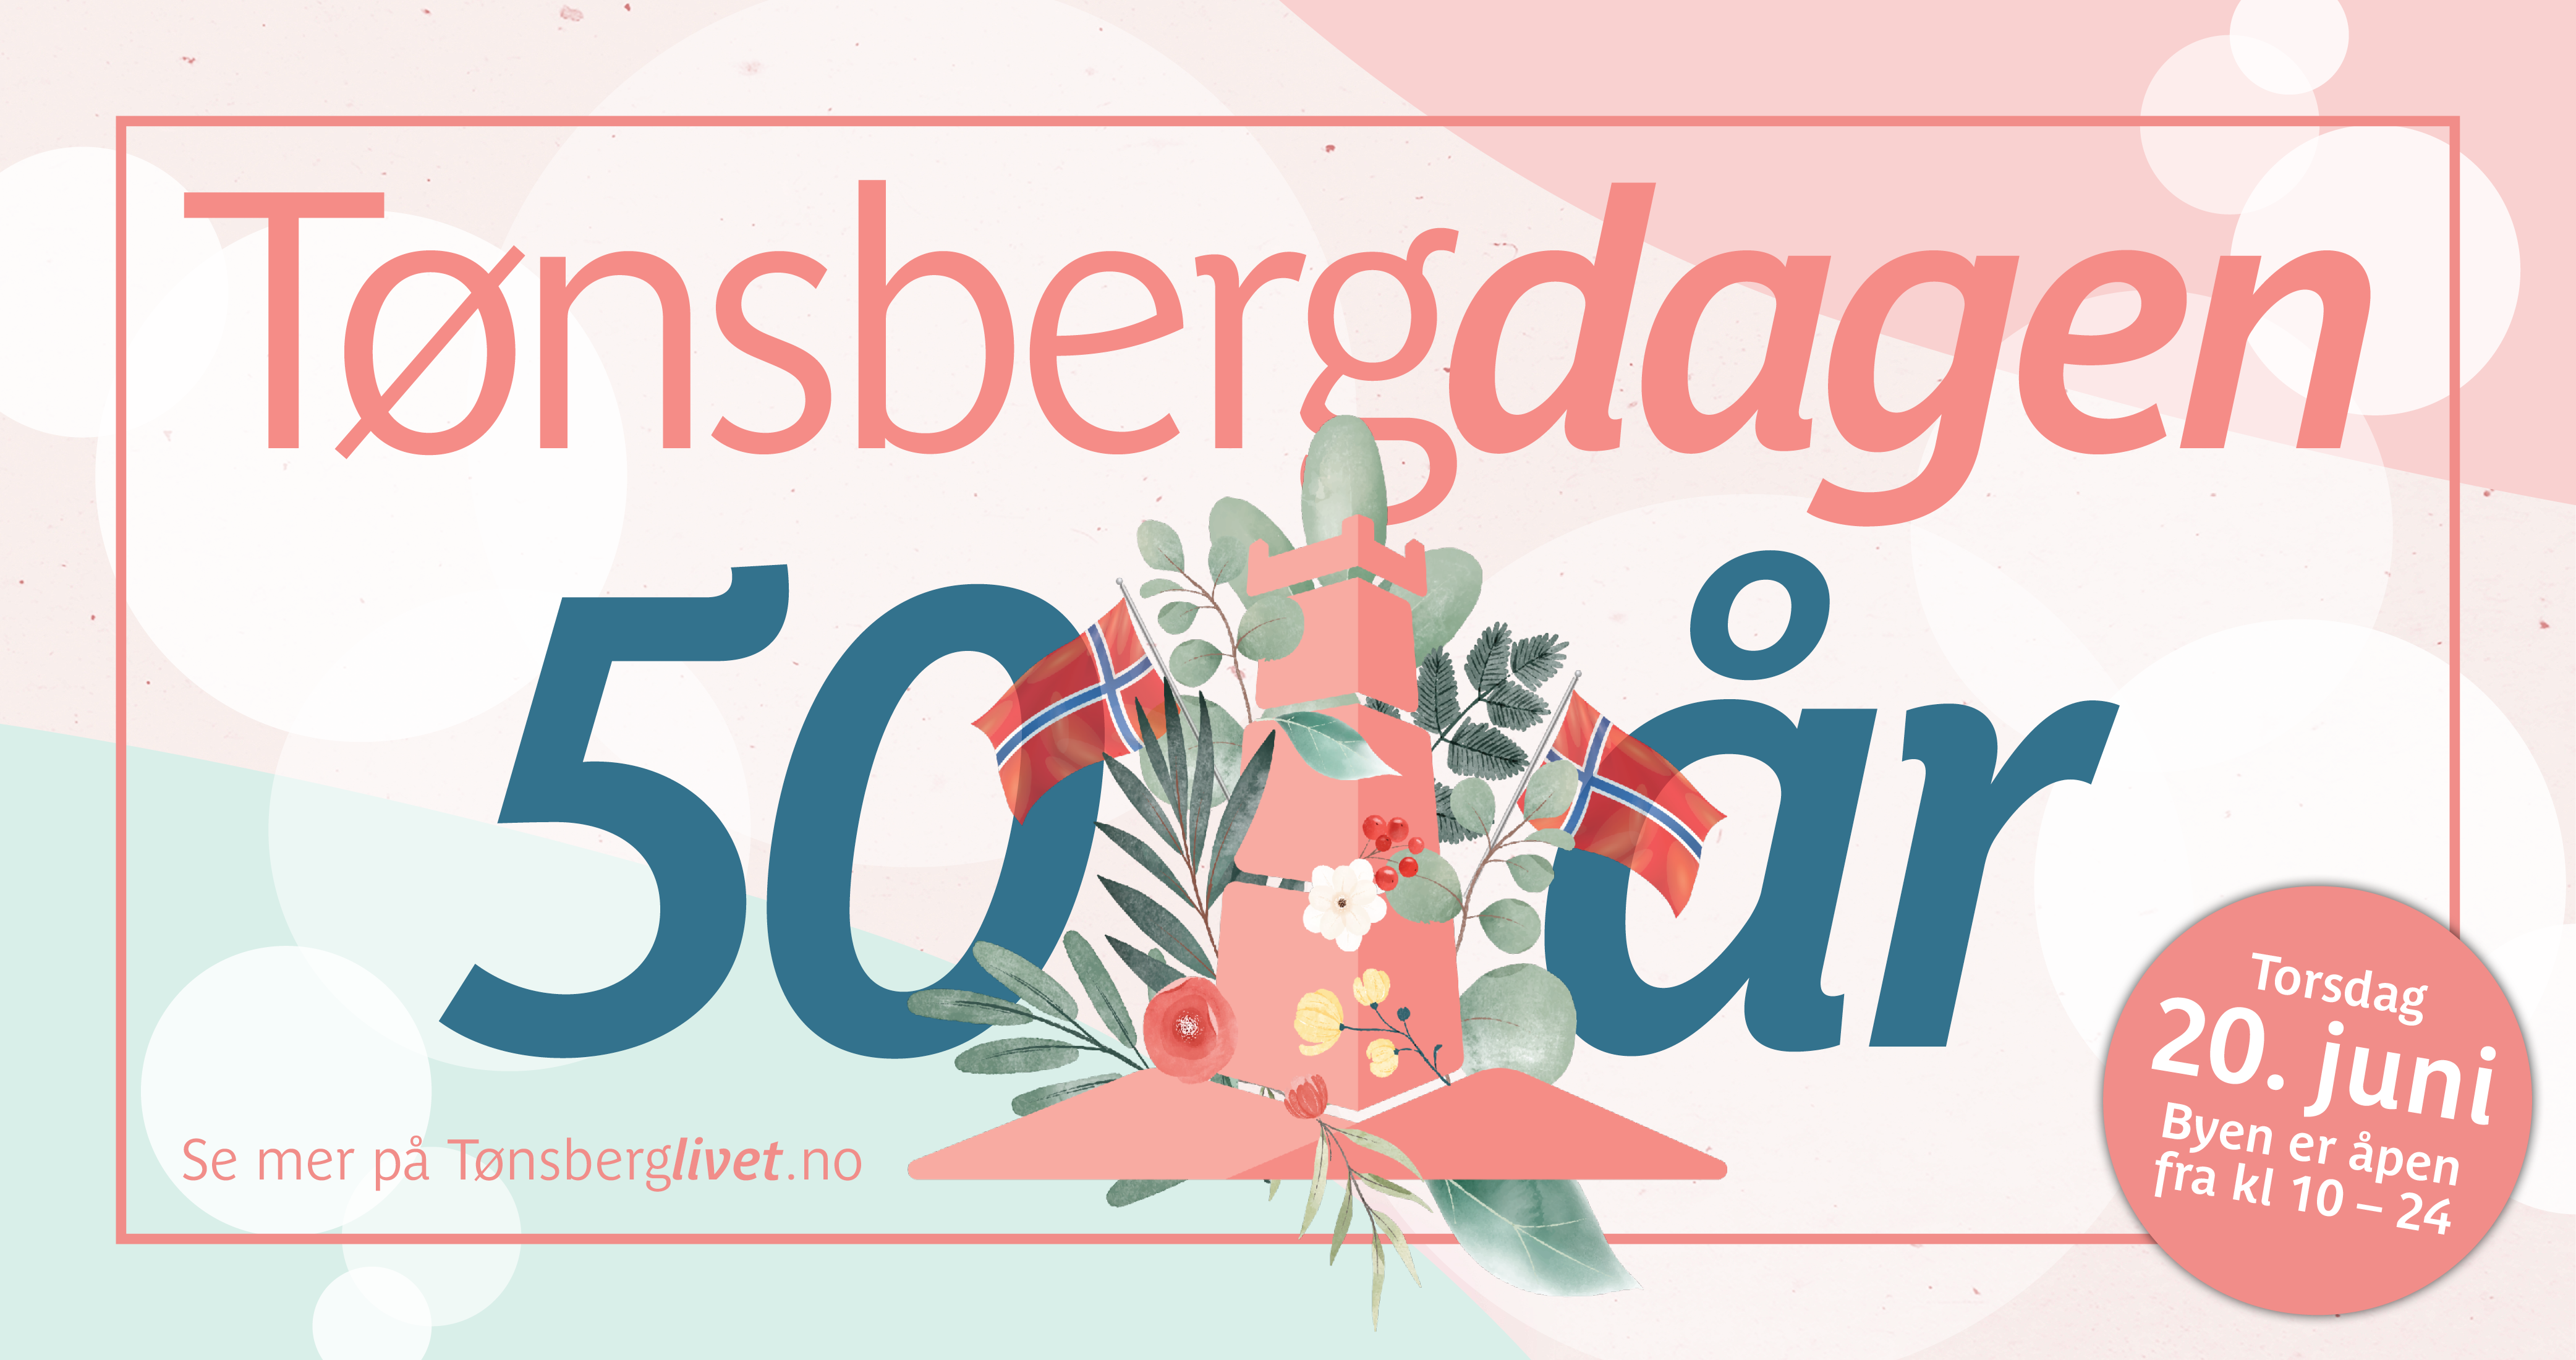 50 år med Tønsbergdagen!